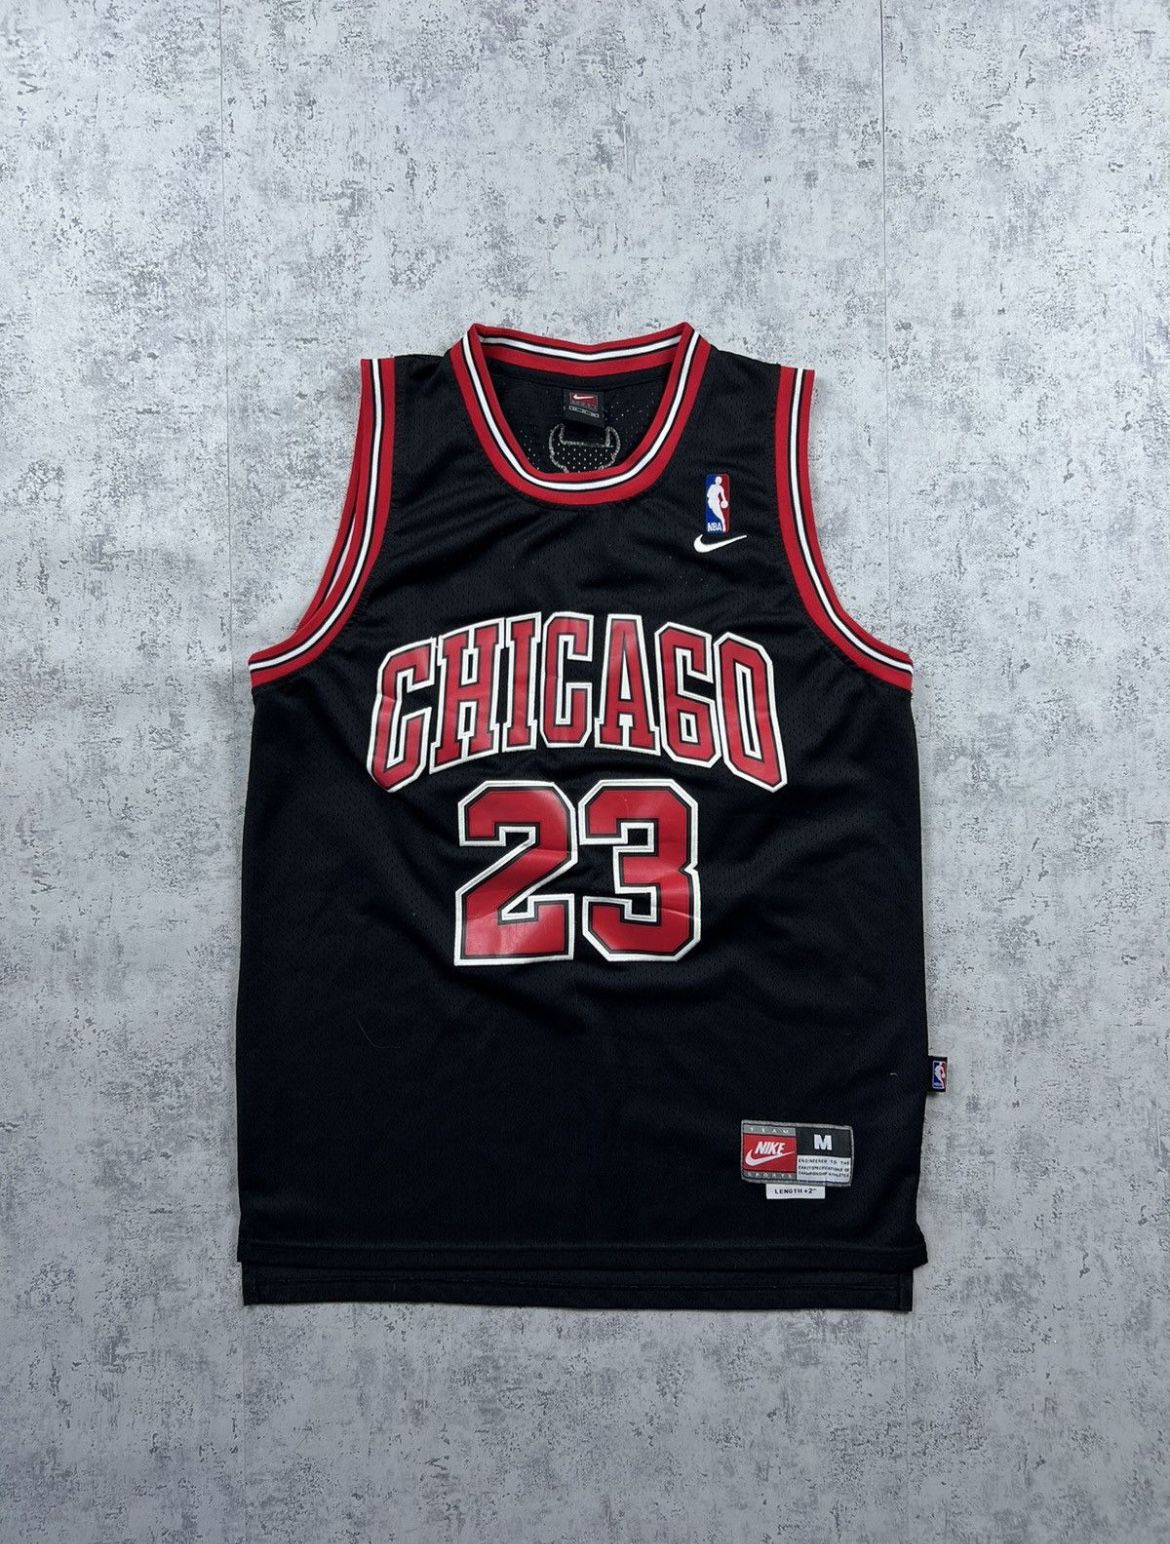 OG 90s Nike MJ Bulls retro jersey 